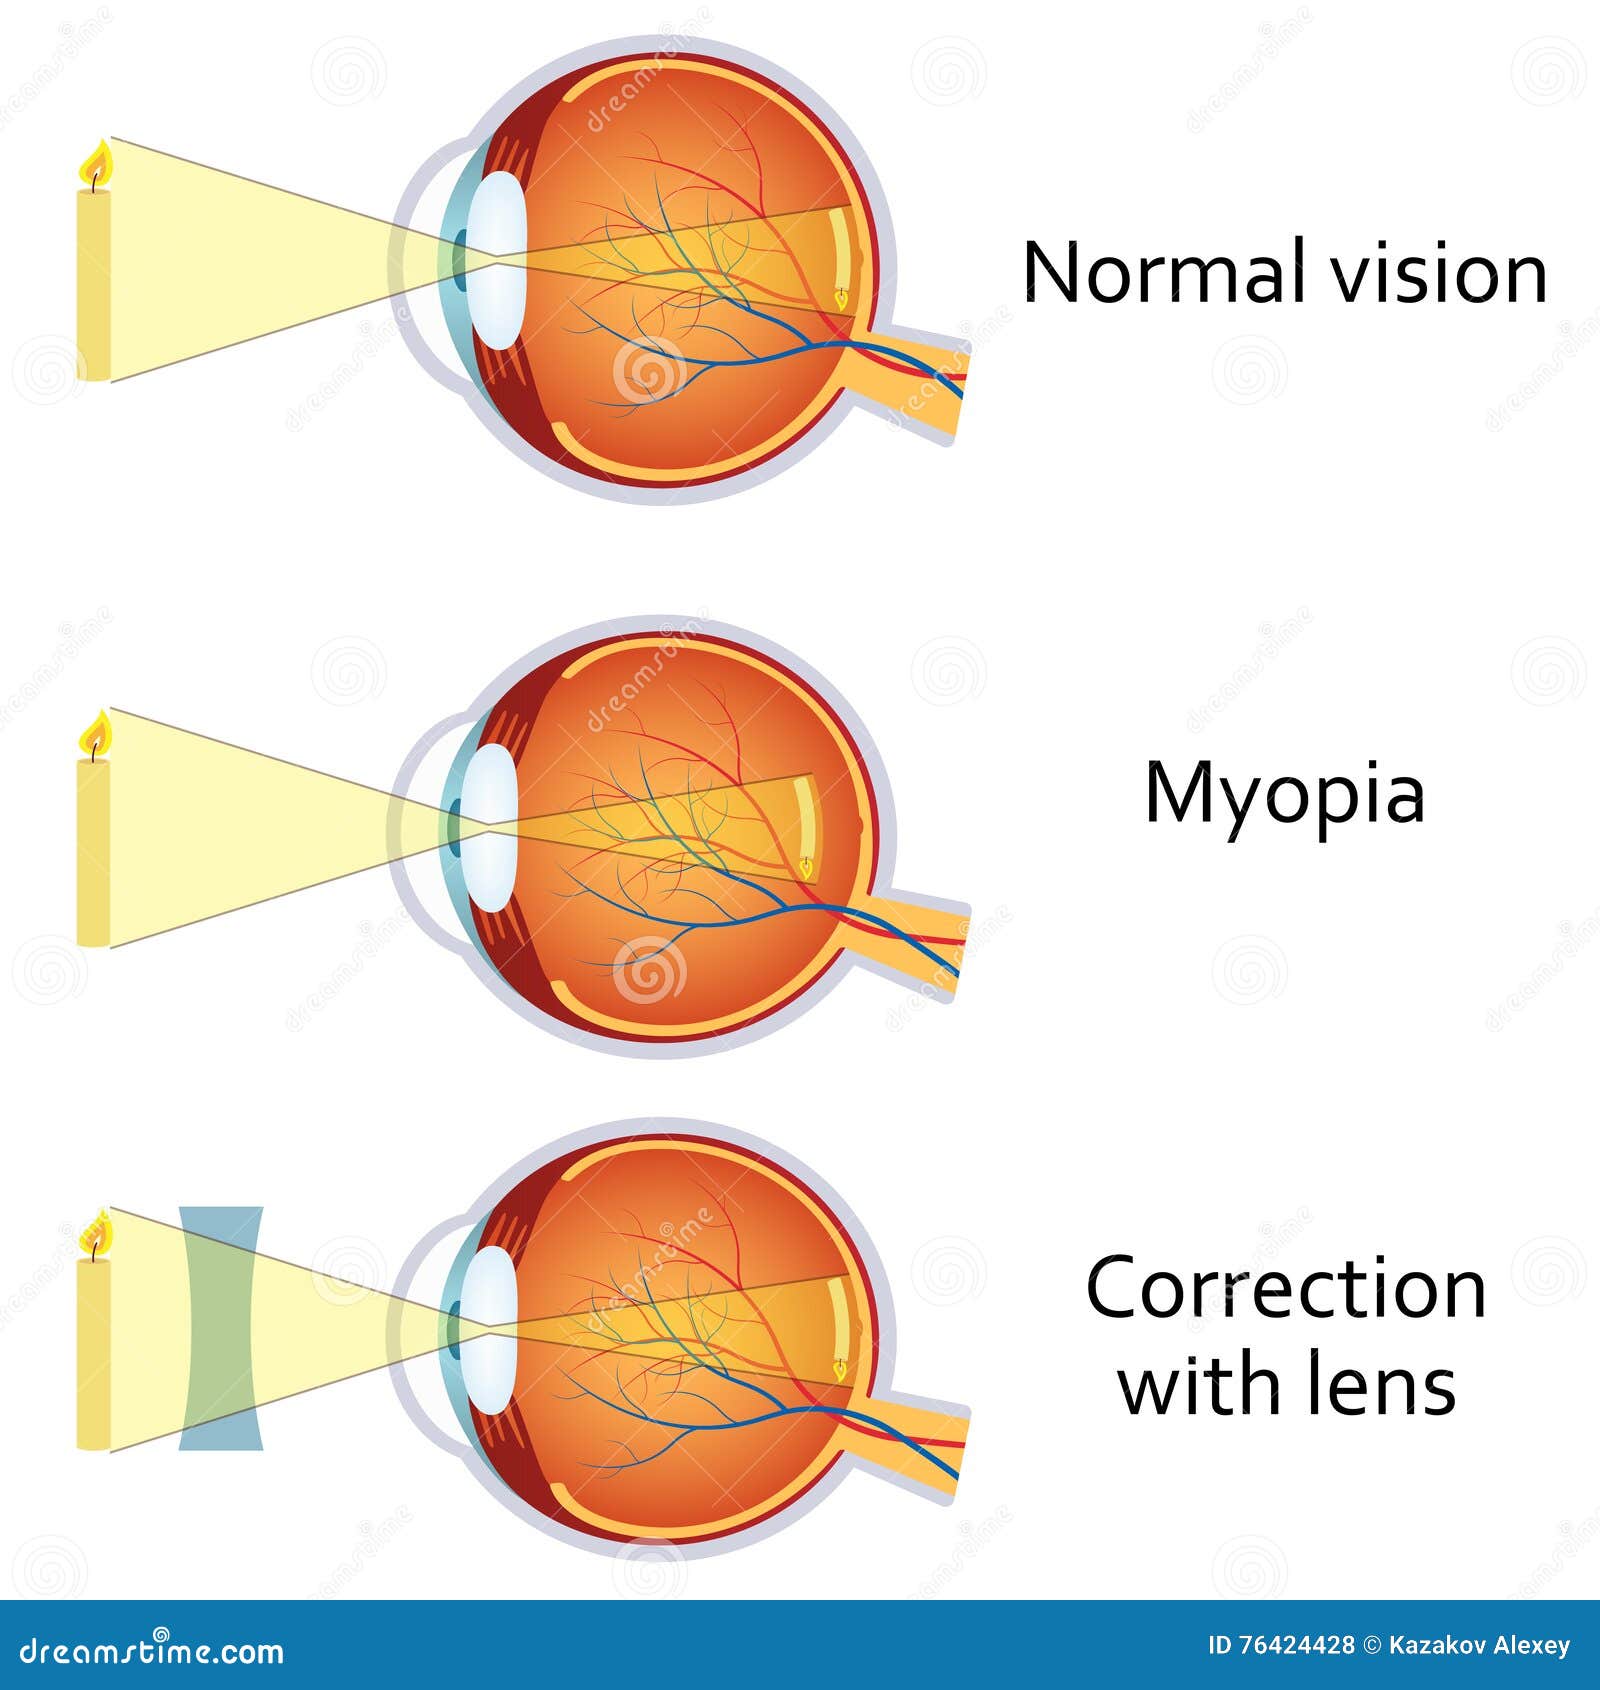 myopia és hyperopia megjelölés homeopátiás gyógyszer a látás javítására